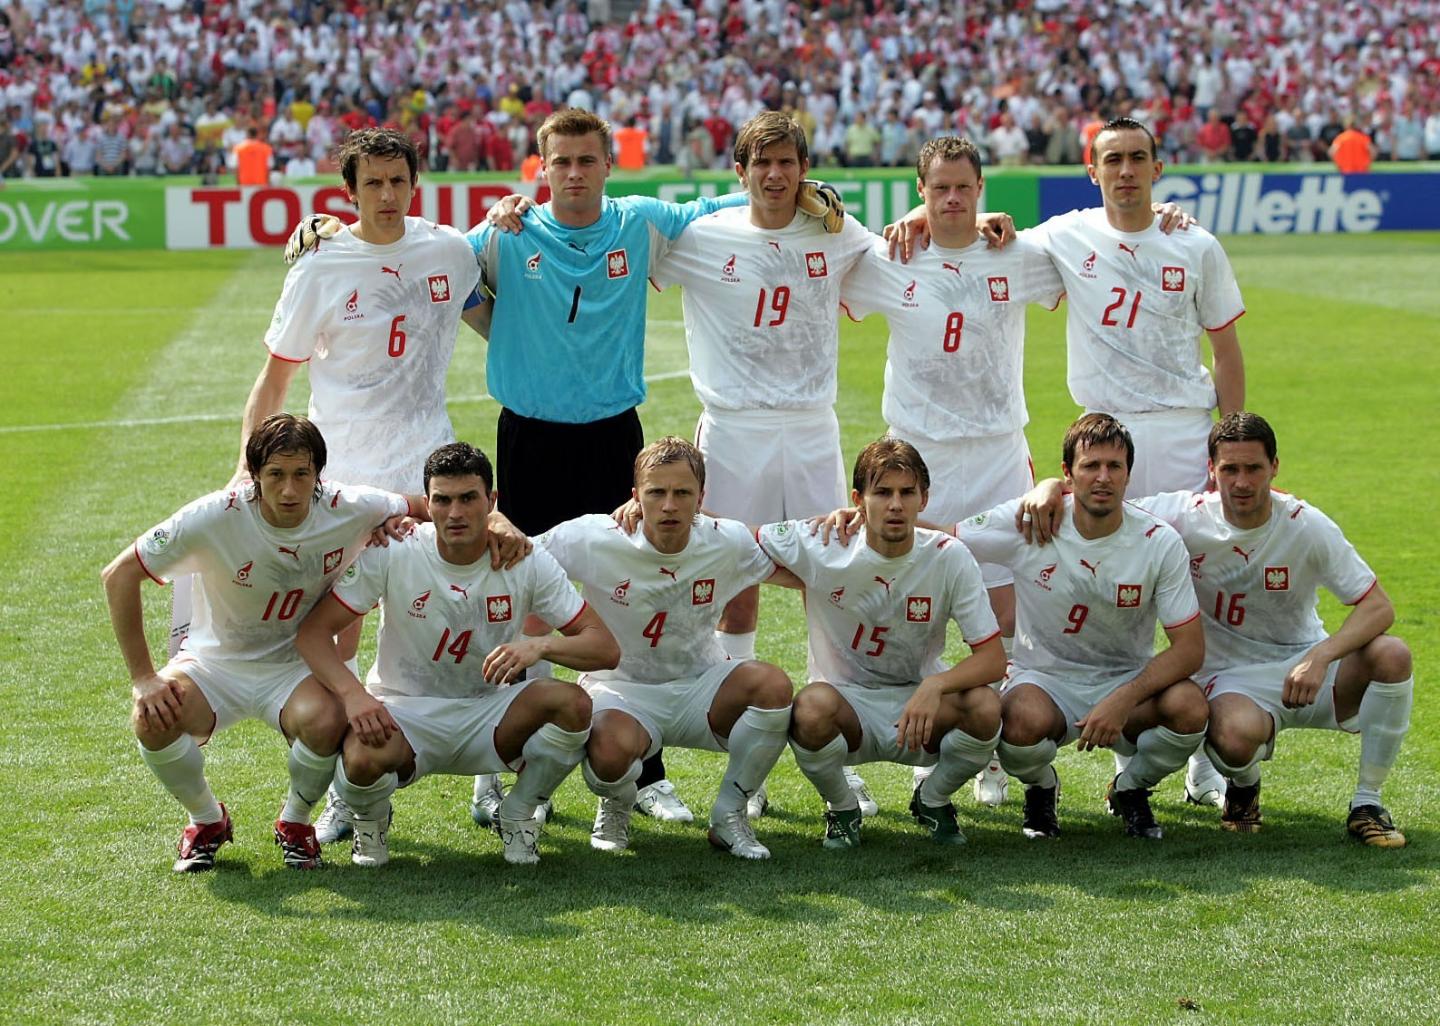 Reprezentacja Polski, w białuch strojach, pozuje do zdjęcia przed meczem z Kostaryką. Bramkarz Artur Boruc, drugi od lewej w górnym rzędzie, w błękitnej bluzie i czarnych spodenkach.